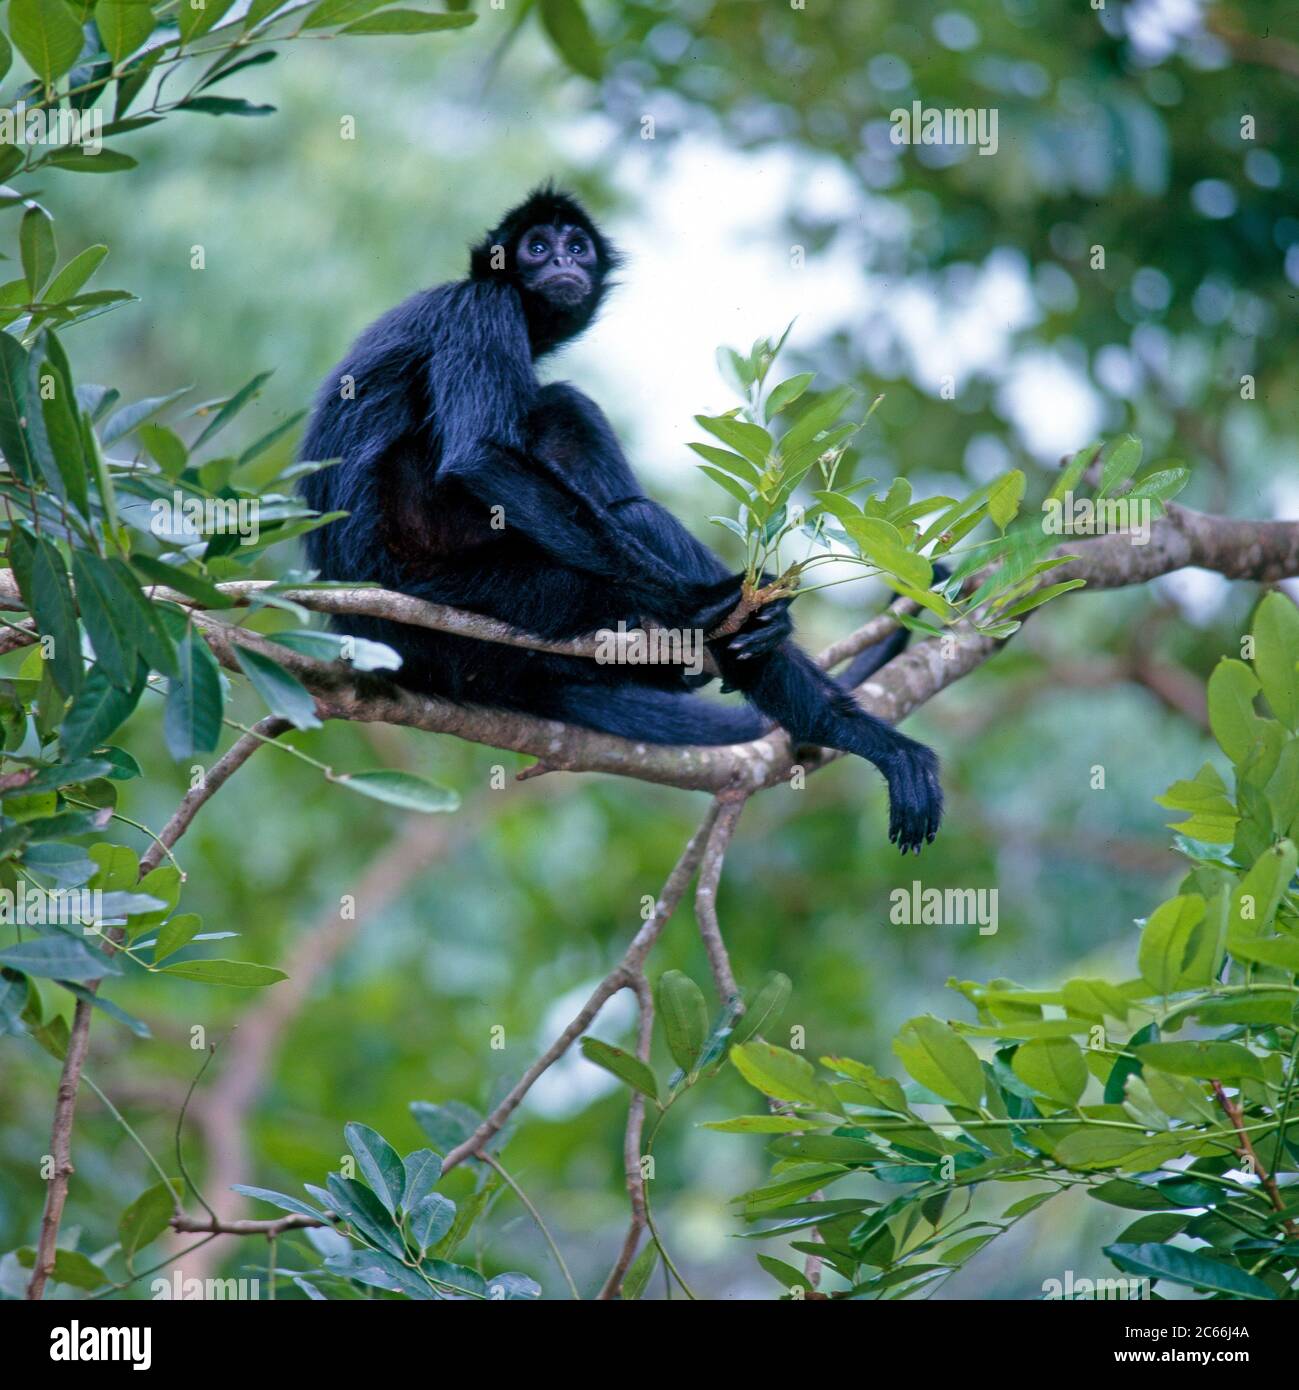 Black-Faced Black Spider Affe, auch bekannt als Koata, Amazonas Regenwald-Affe, sitzt auf den Zweigen eines Dschungelbaums Stockfoto